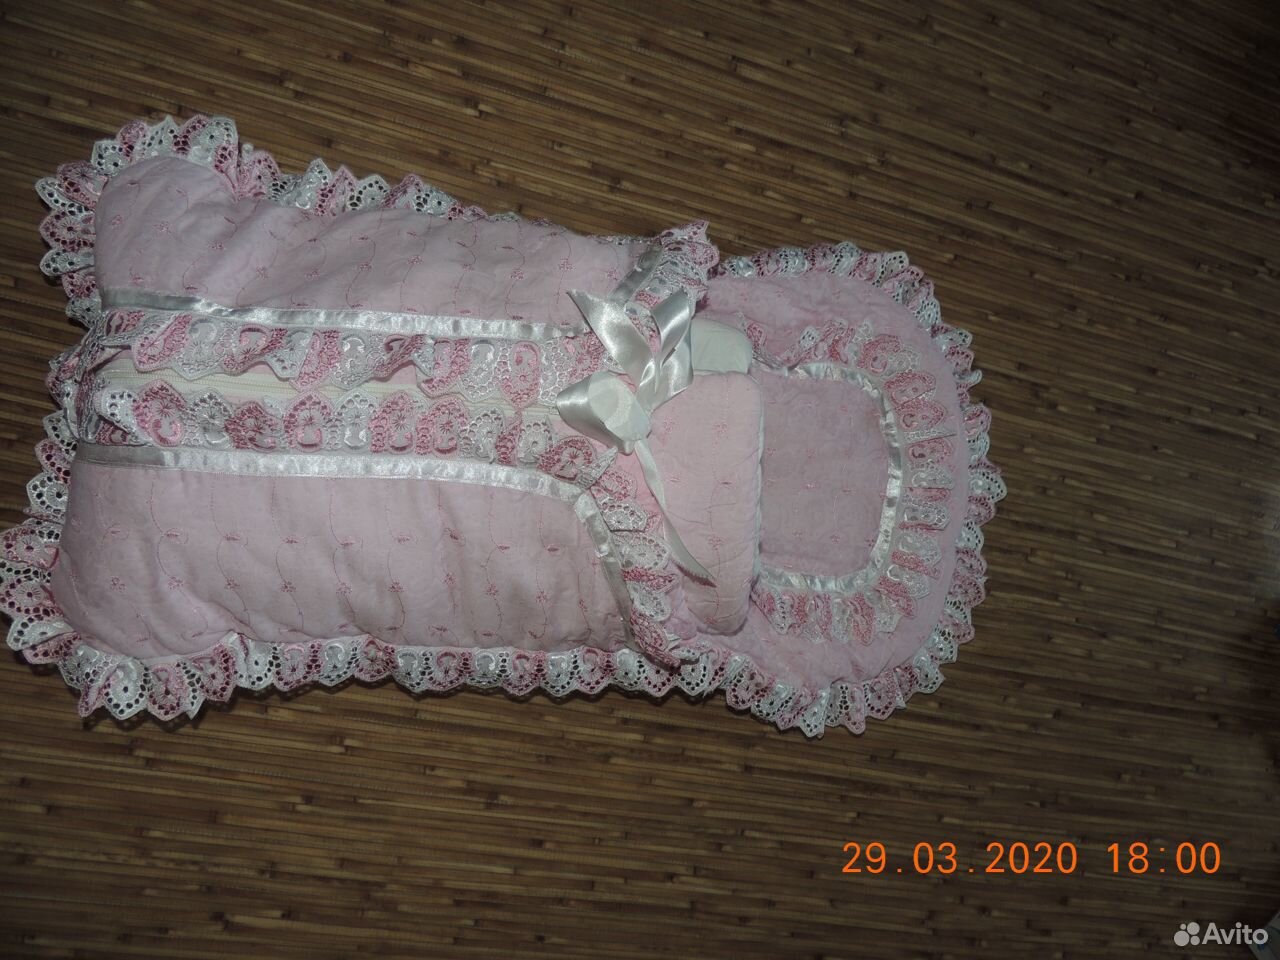  Для новорожденного одеялко и конверт 